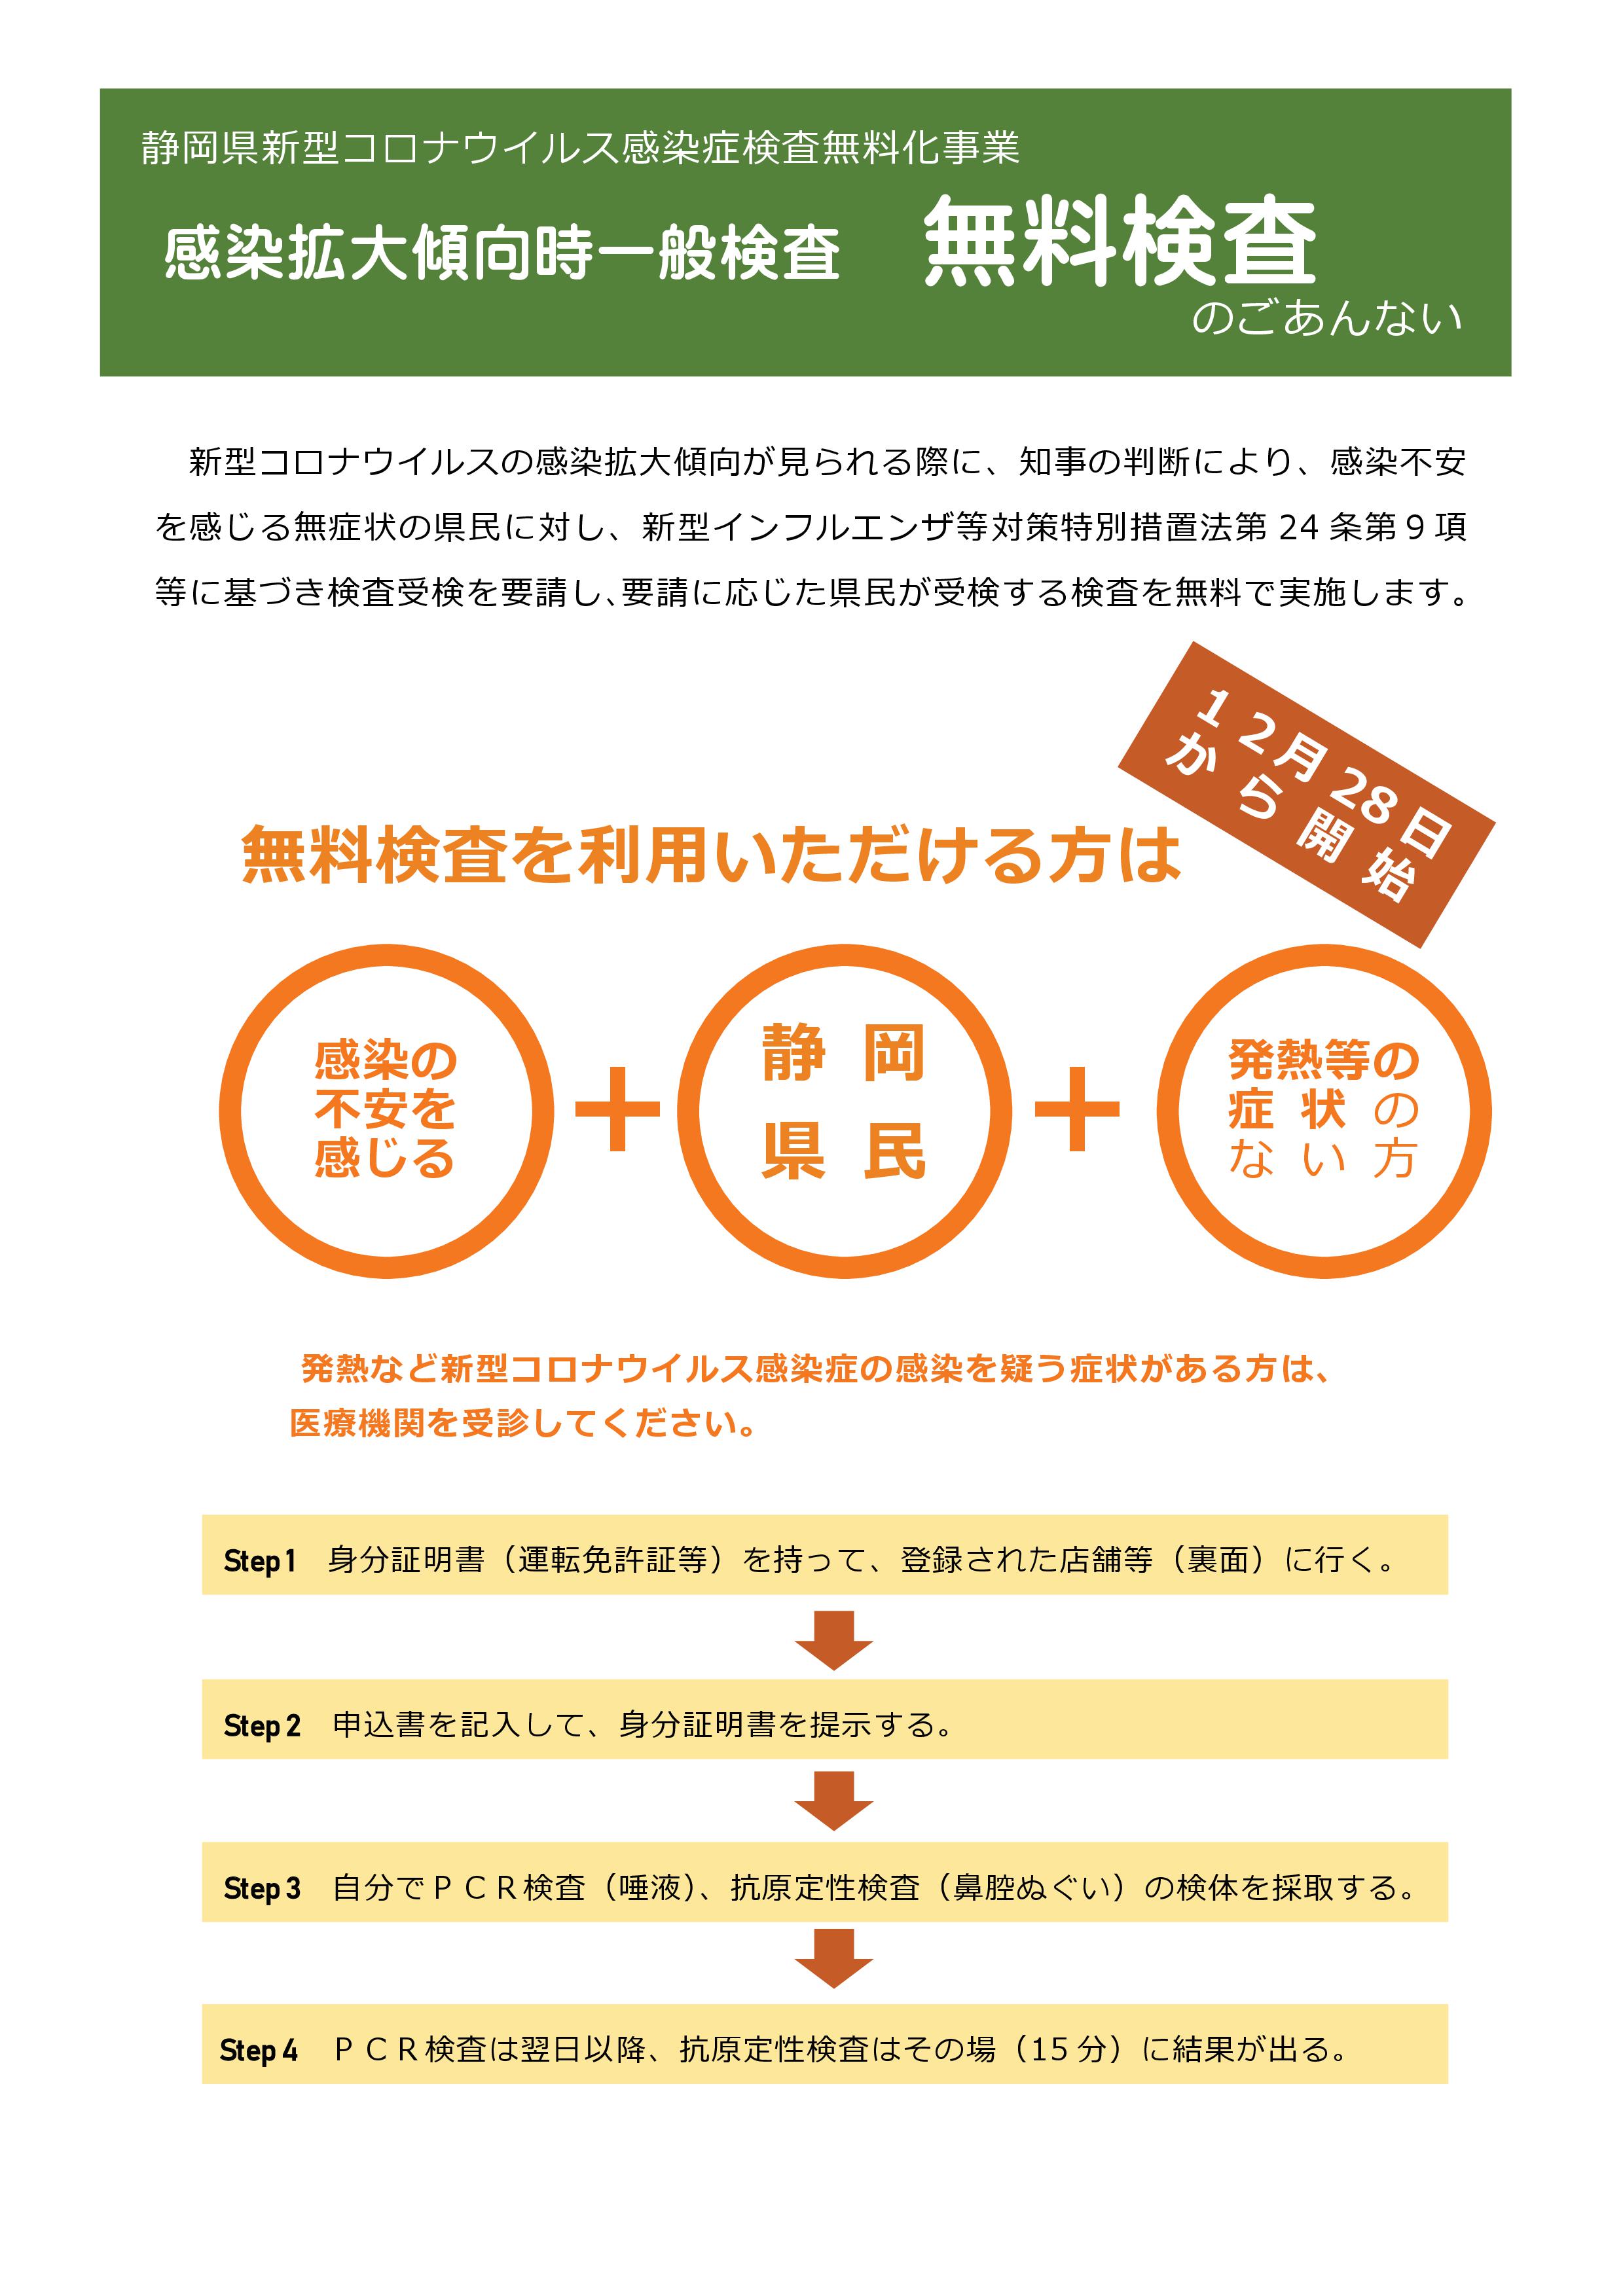 静岡県新型コロナウイルス感染症検査無料化事業のお知らせ